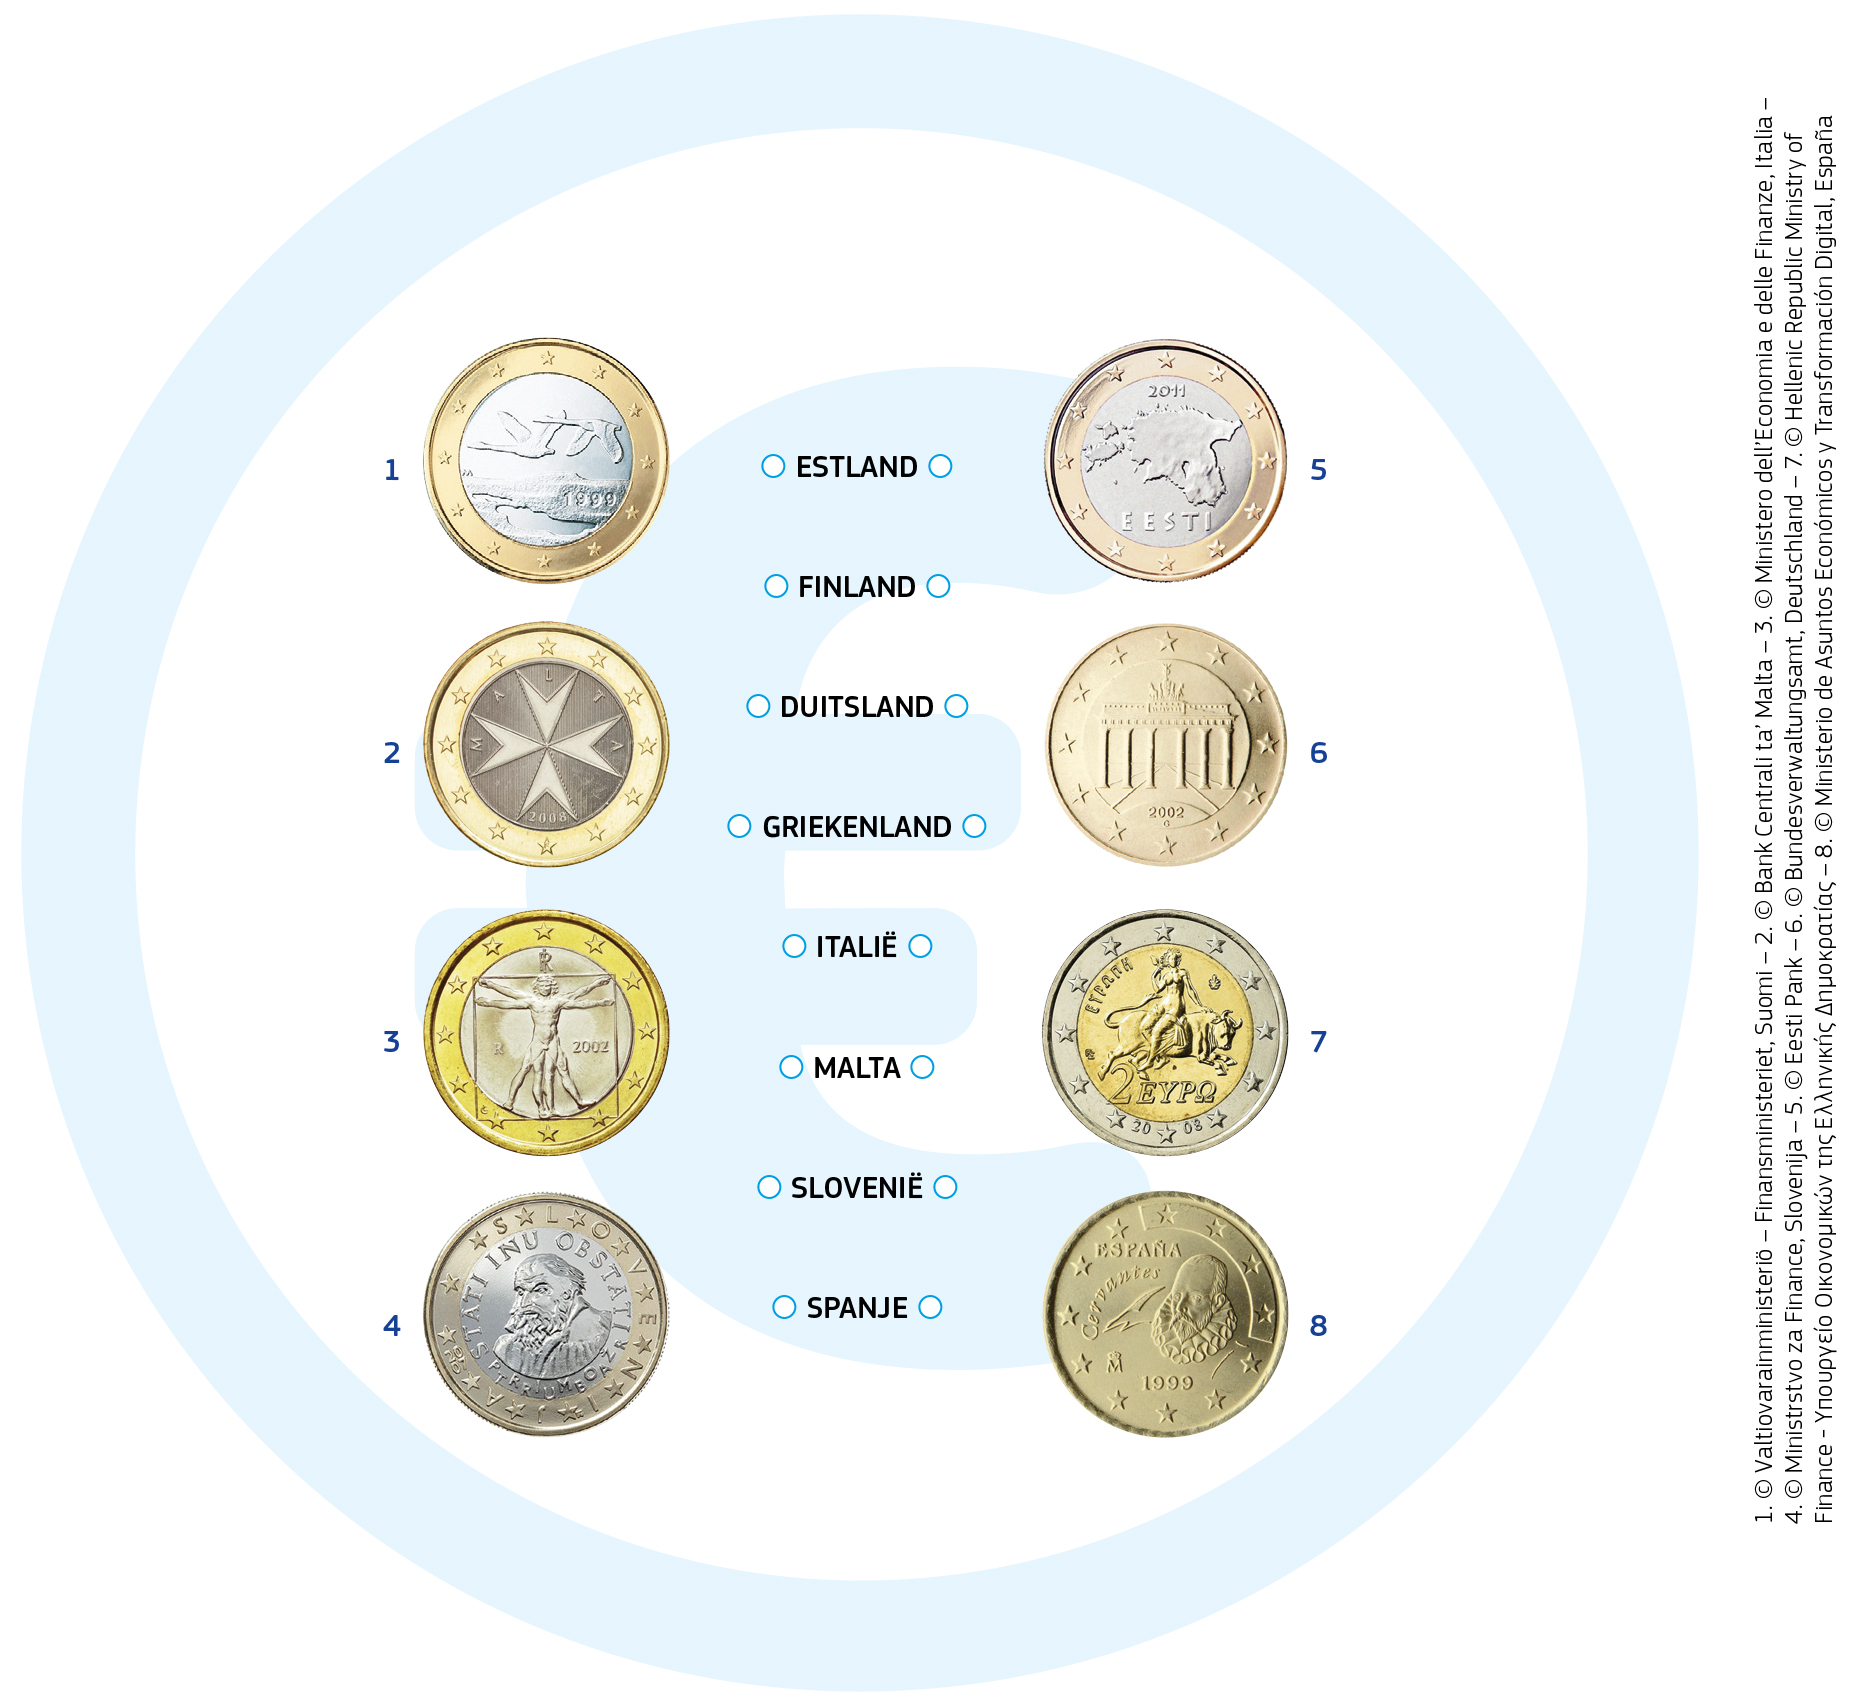 De euromunten hebben één kant die voor elk land dezelfde is, namelijk de kaart van Europa. Op de andere kant van de munt heeft elk land zijn eigen ontwerp. Enkele voorbeelden: Op het Finse muntstuk van één euro staan twee vliegende zwanen. Op de Maltese munten van één en twee euro staat een embleem dat het Maltese kruis heet. Op de Italiaanse munt van één euro staat een beroemde tekening van Leonardo da Vinci, die de ideale verhoudingen van het menselijk lichaam weergeeft. Op de Griekse munt van twee euro staat Zeus, die in de gedaante van een stier Europa ontvoert. Europa is een prinses uit de Griekse mythologie, naar wie het continent Europa is genoemd.